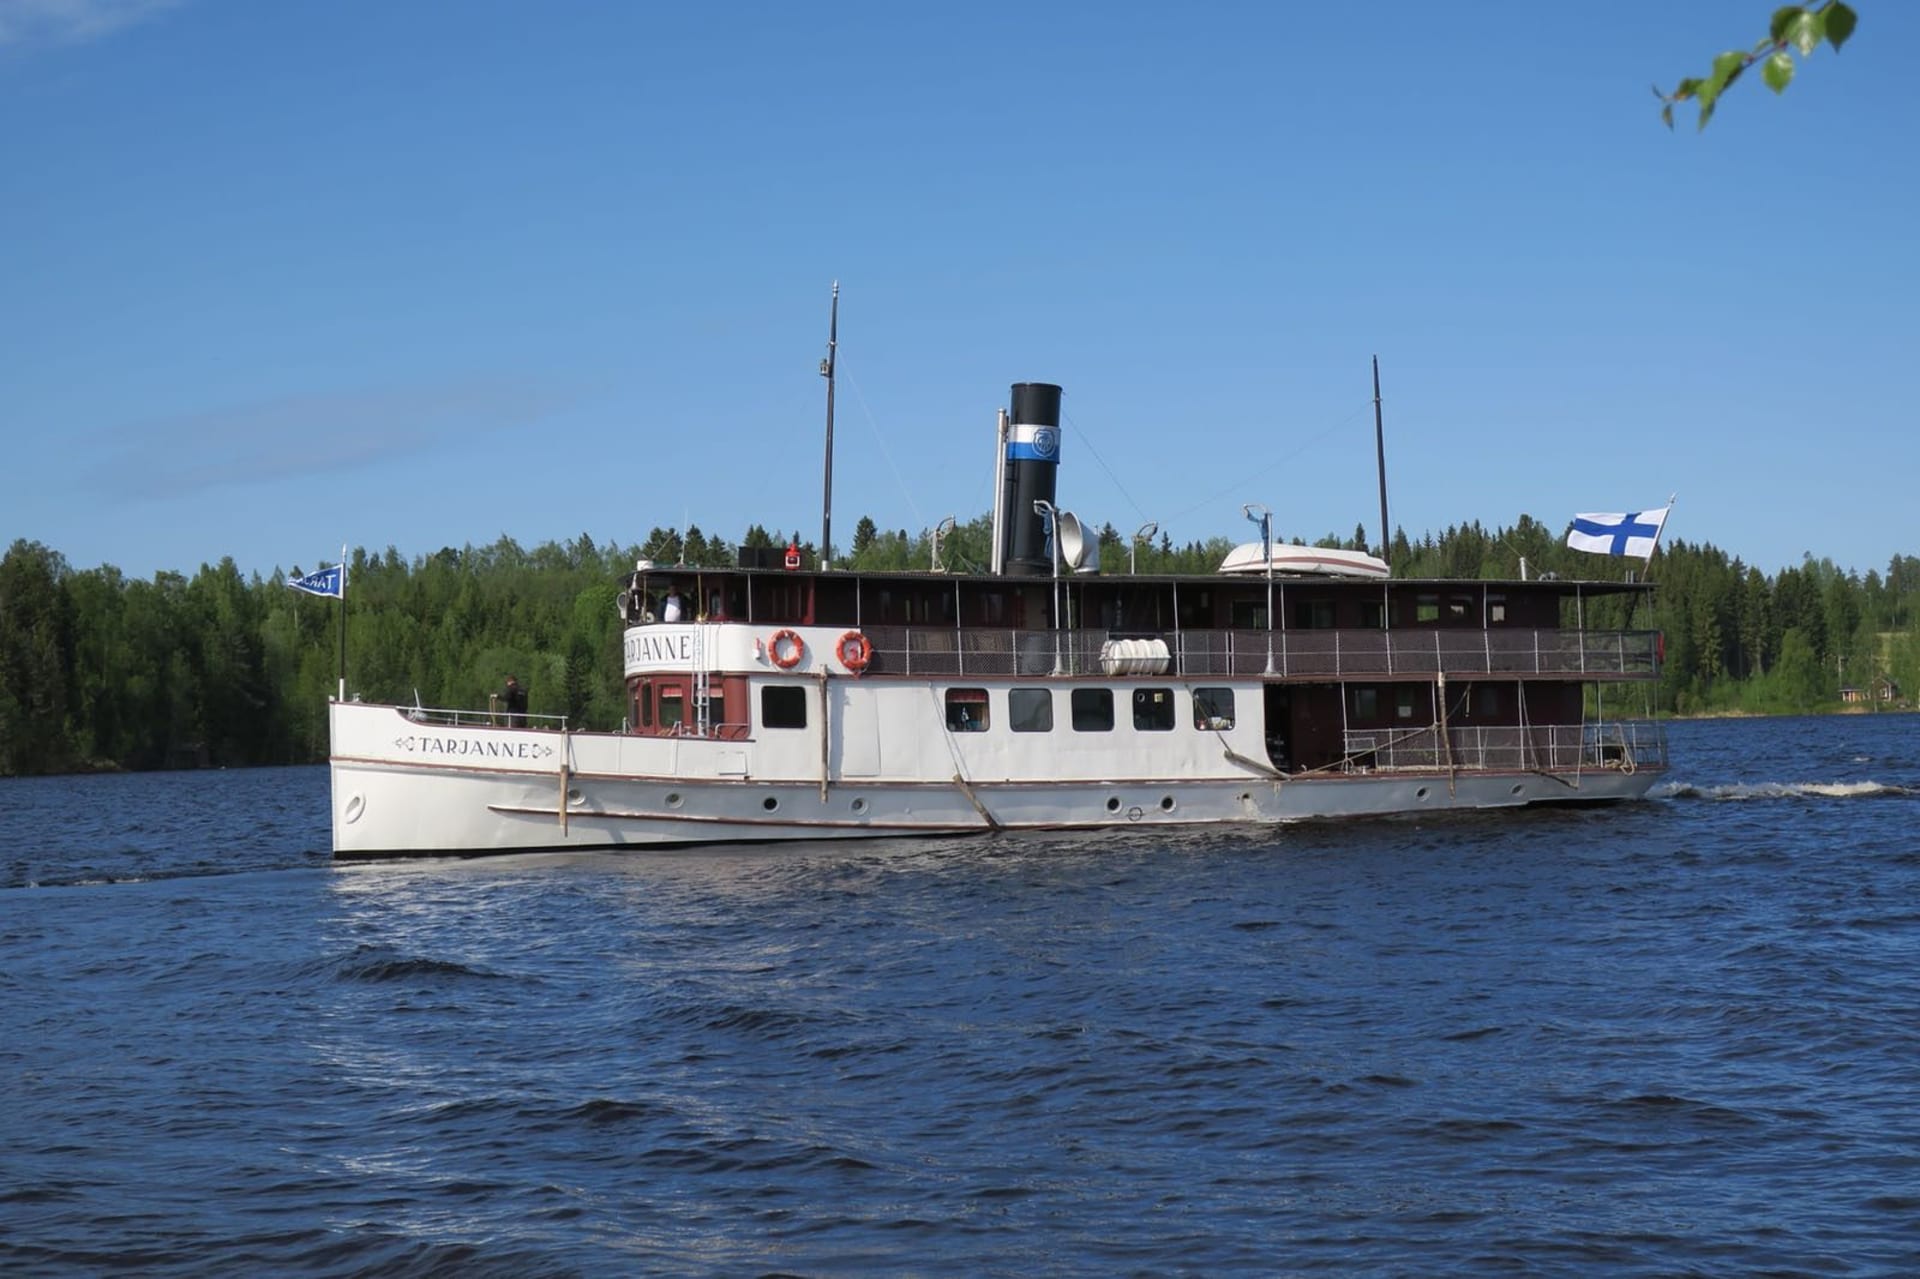 Tarjanne is 114 years old steamship